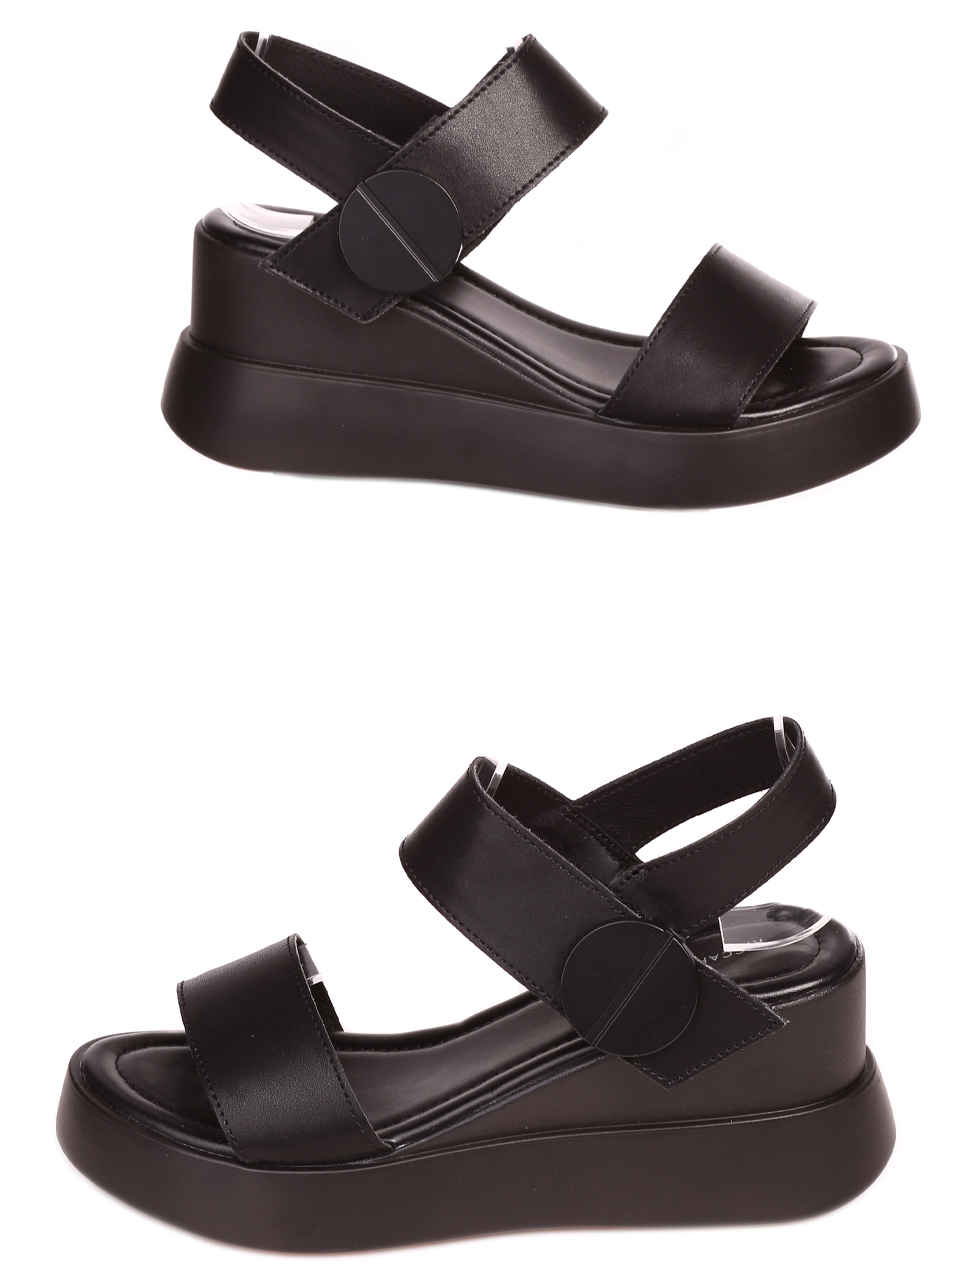 Ежедневни дамски сандали от естествена кожа в черно 4AF-24147 black (23151)